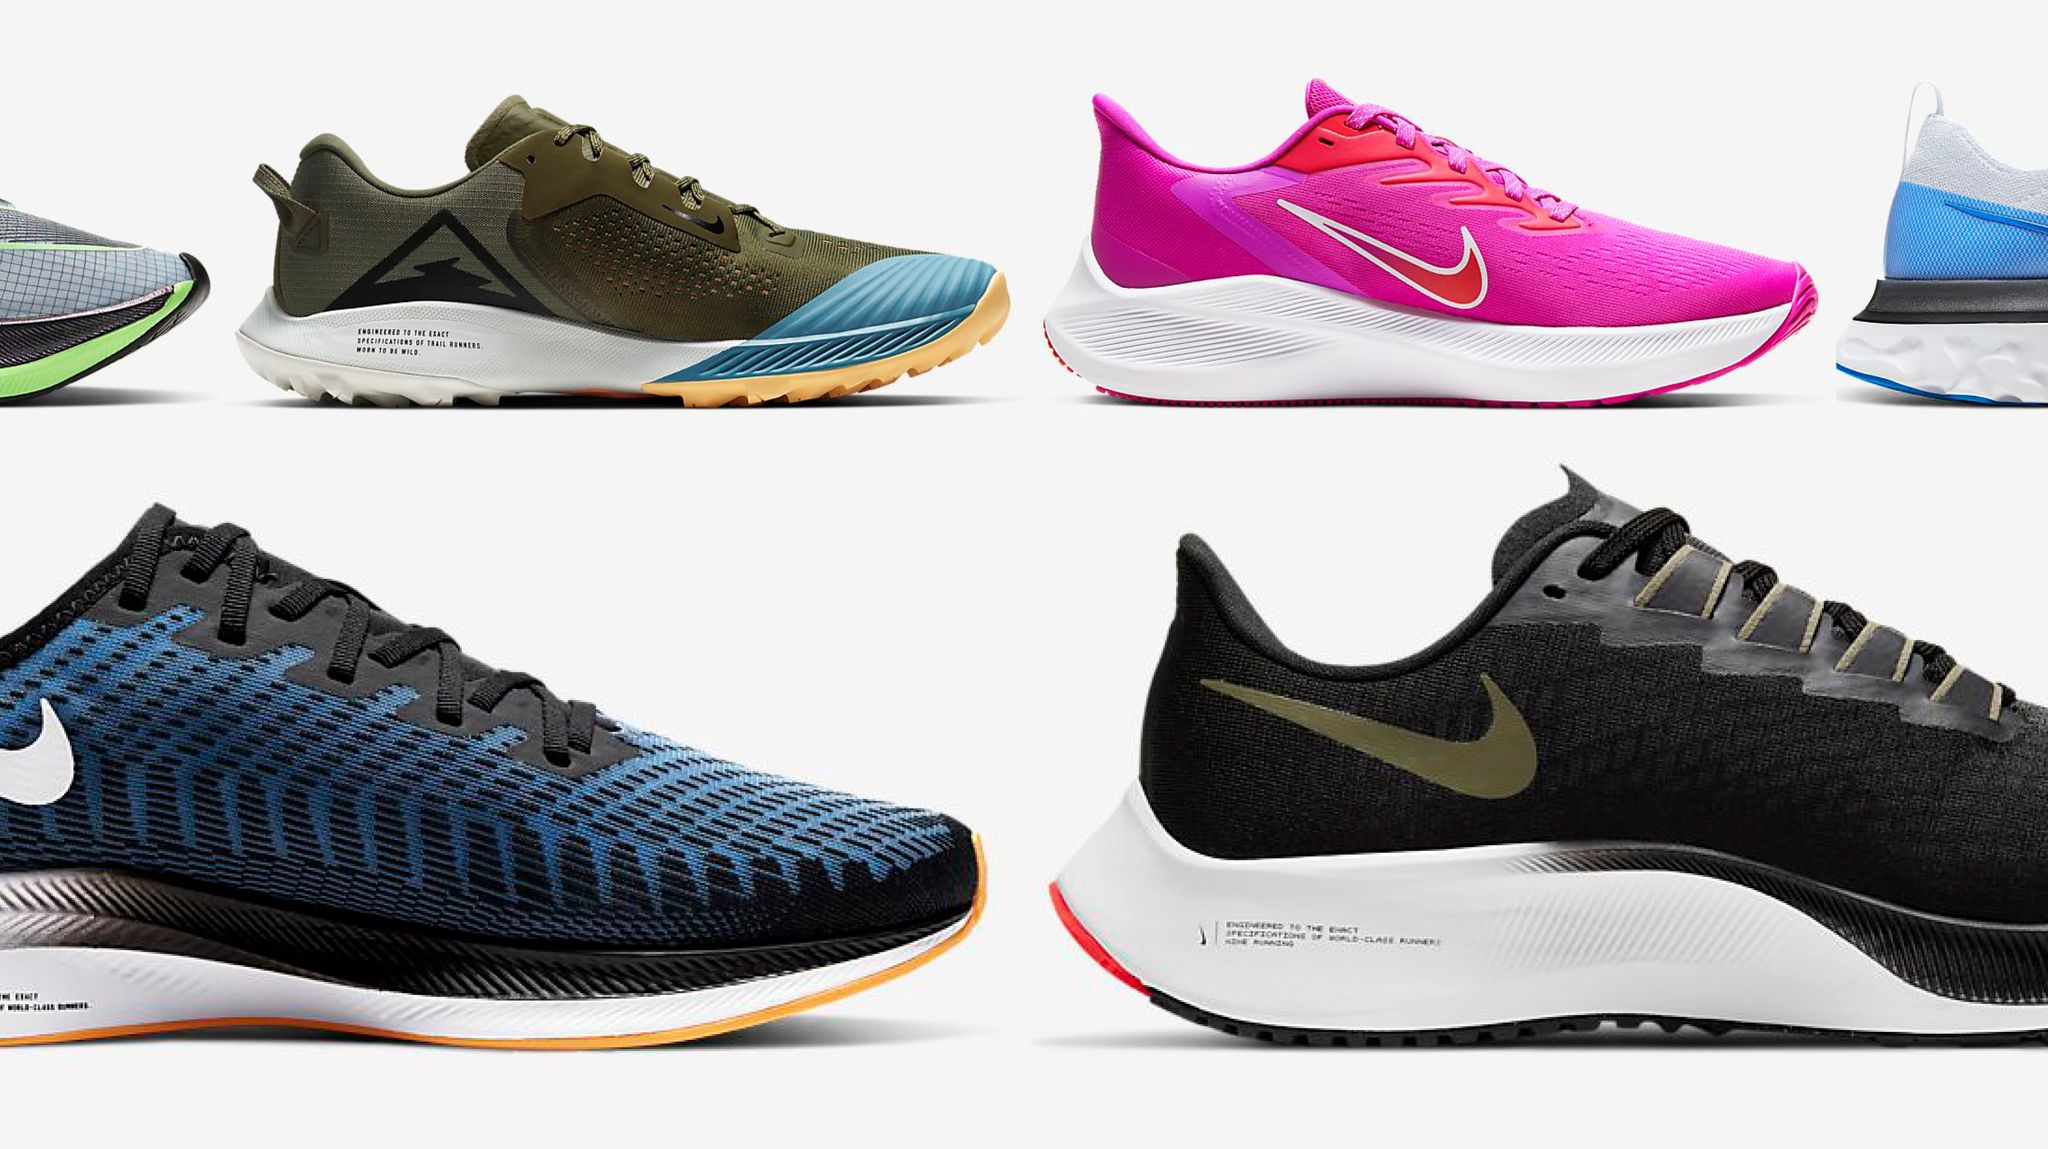 Top 10 giày chạy bộ Nike tốt nhất 2022 - Runningshoes